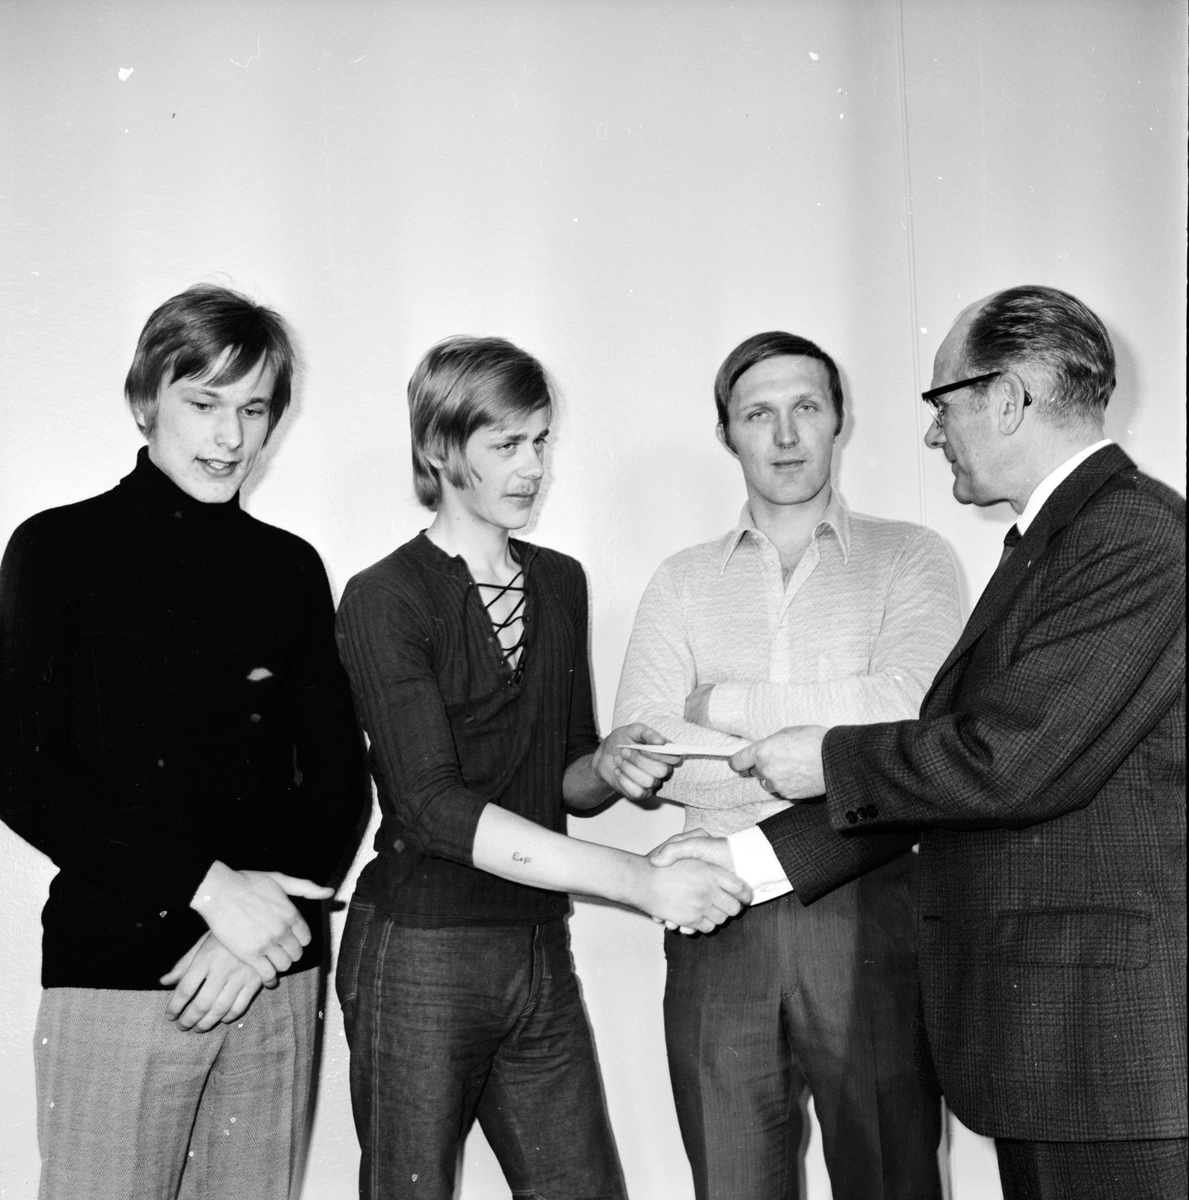 Nytorp,
Avslutning,Julfest,
Rektor Andersson avtackas,
December 1971